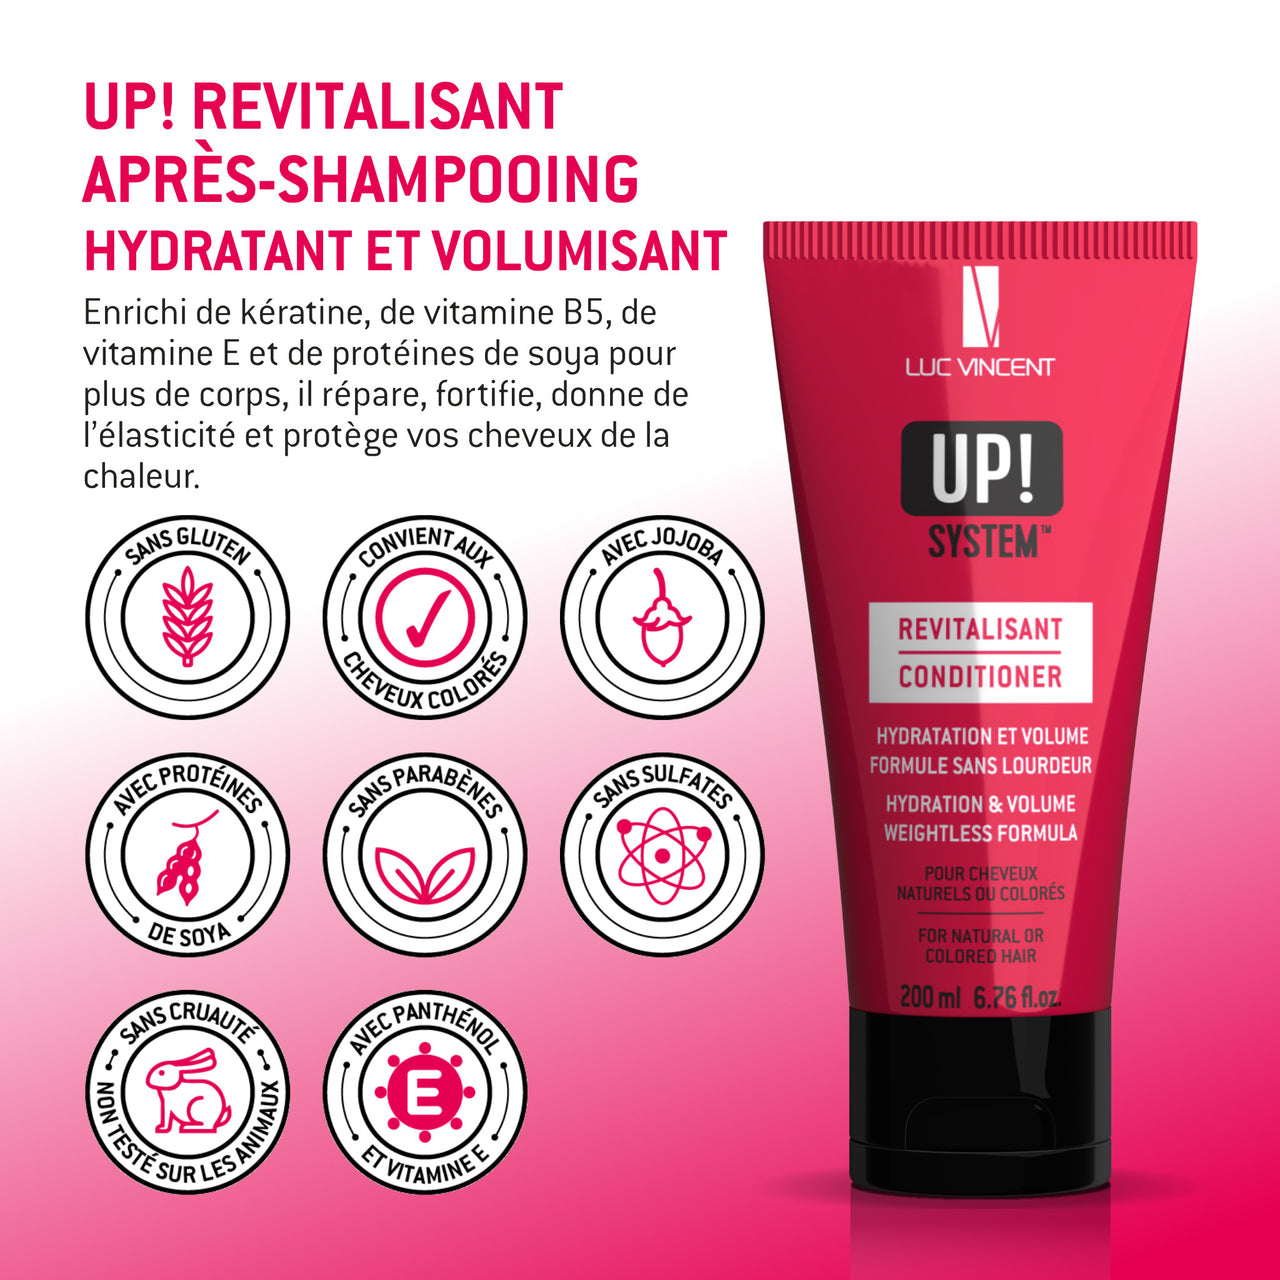 UP! REVITALISANT Après shampoing hydratant et volumisant - Luc Vincent